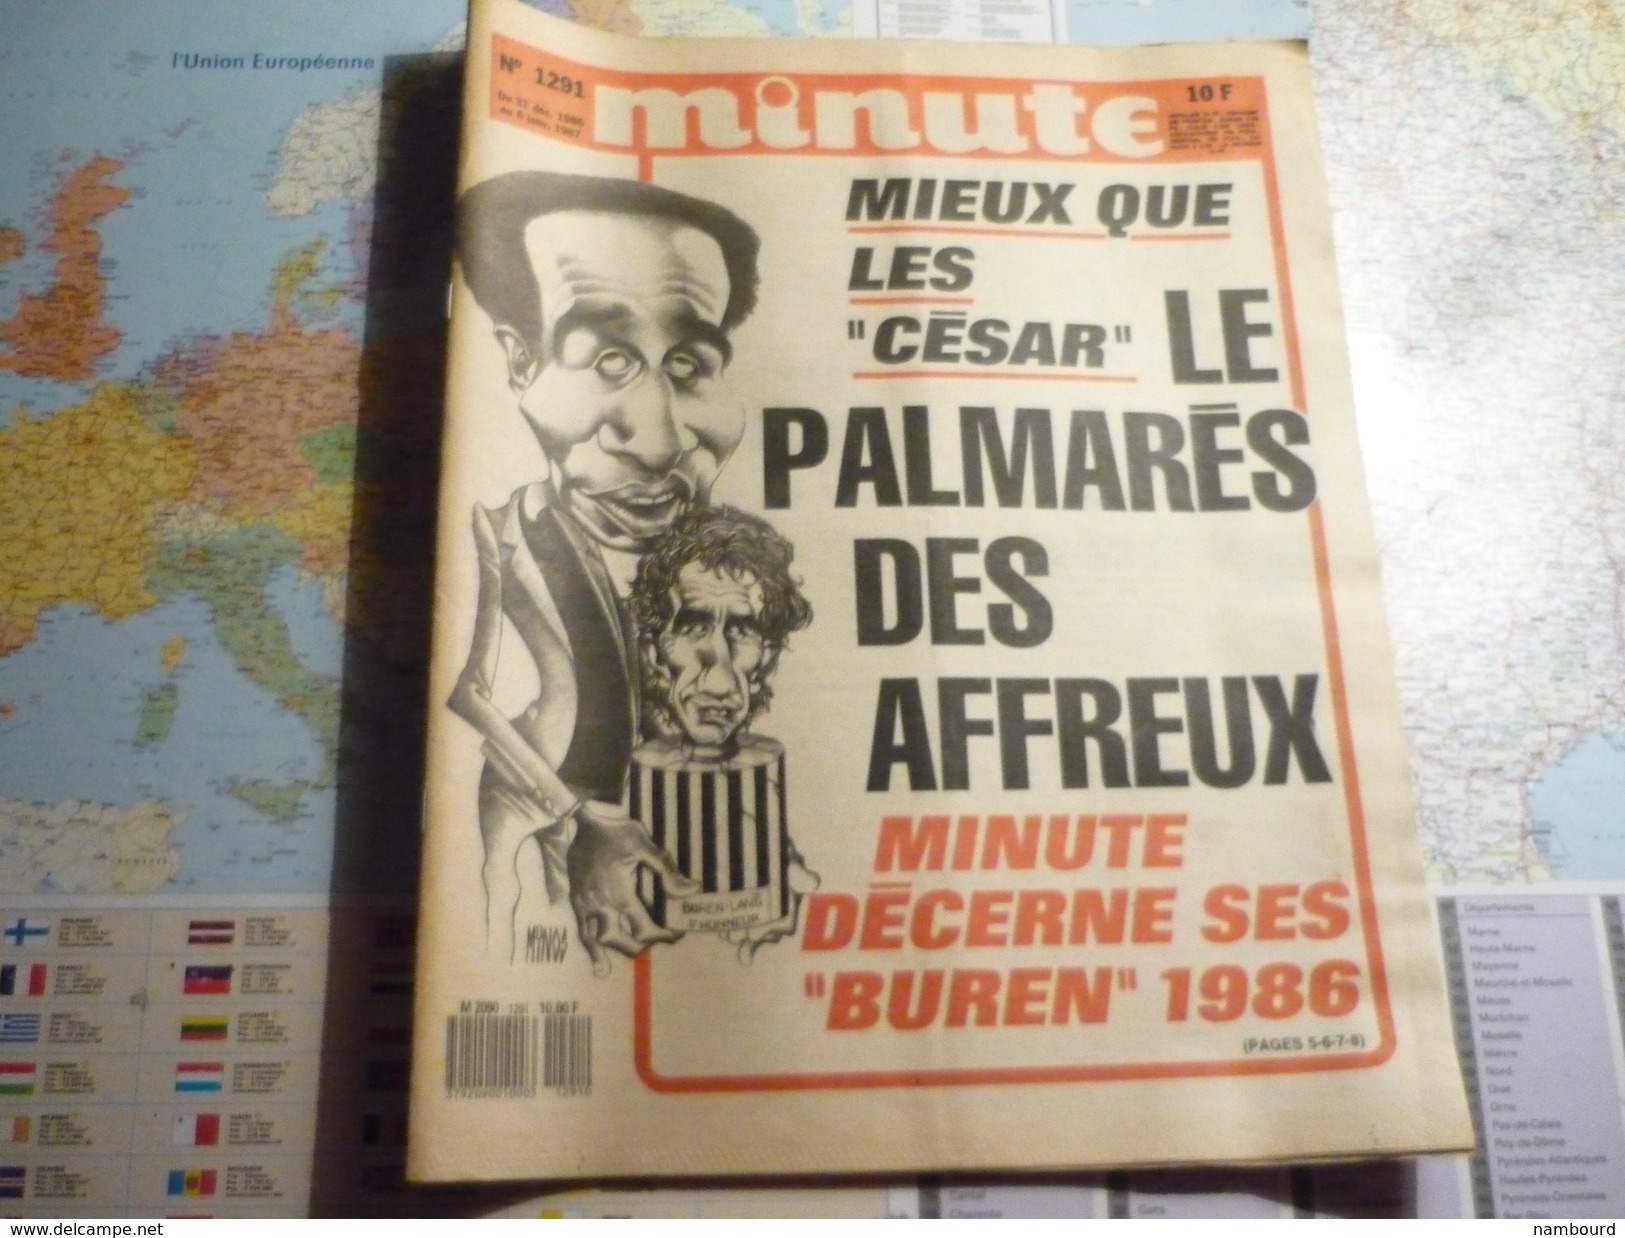 Minute N°1291 Du 31 Décembre 1986 Au 6 Janvier 1987 Mieux Que Les "César" Le Palmarès Des Affreux- Minute Décerne... - Politique